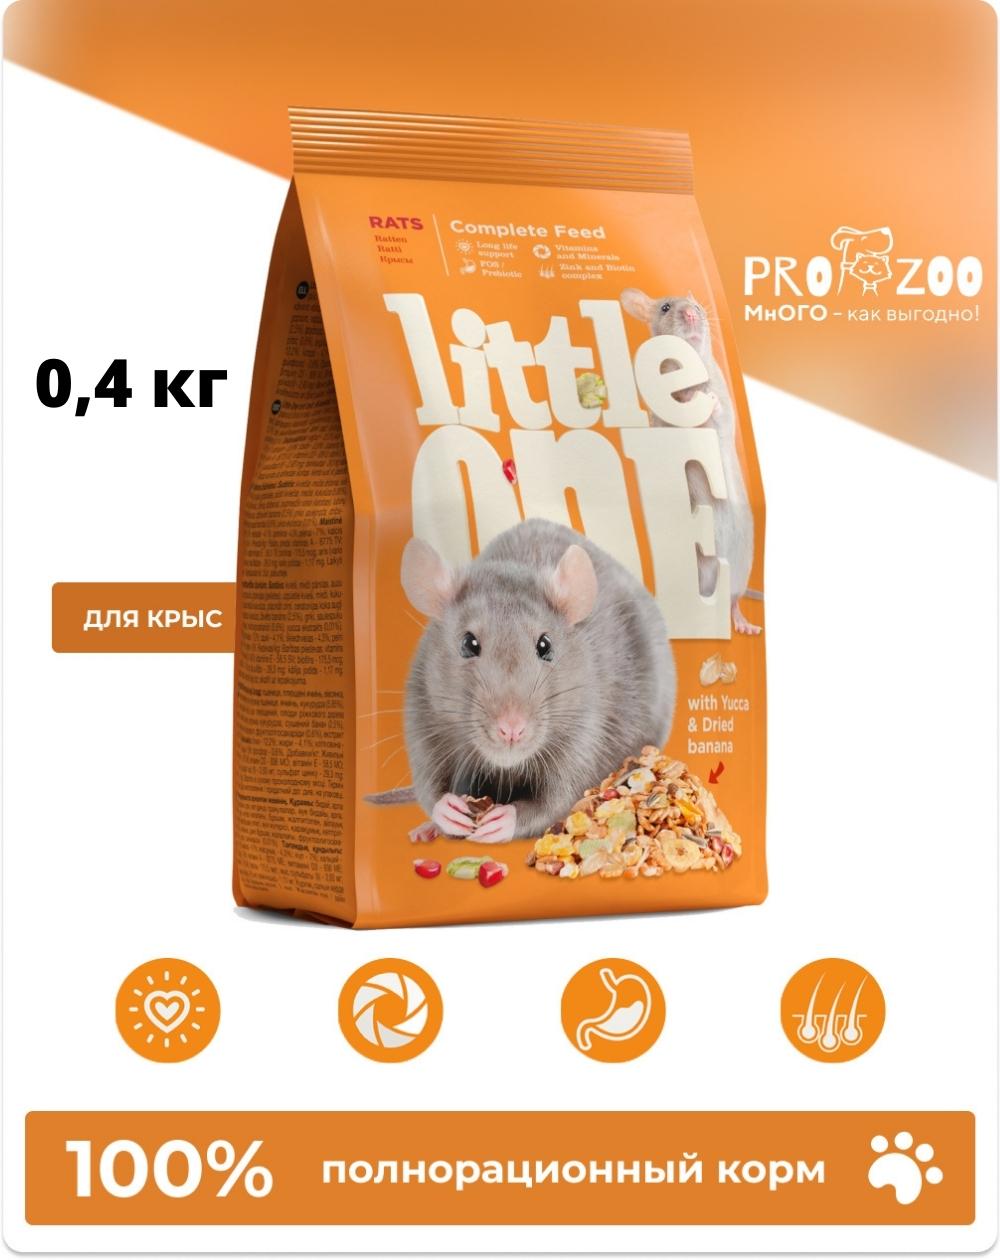 Корм Little One для крыс, 0,4 кг 1